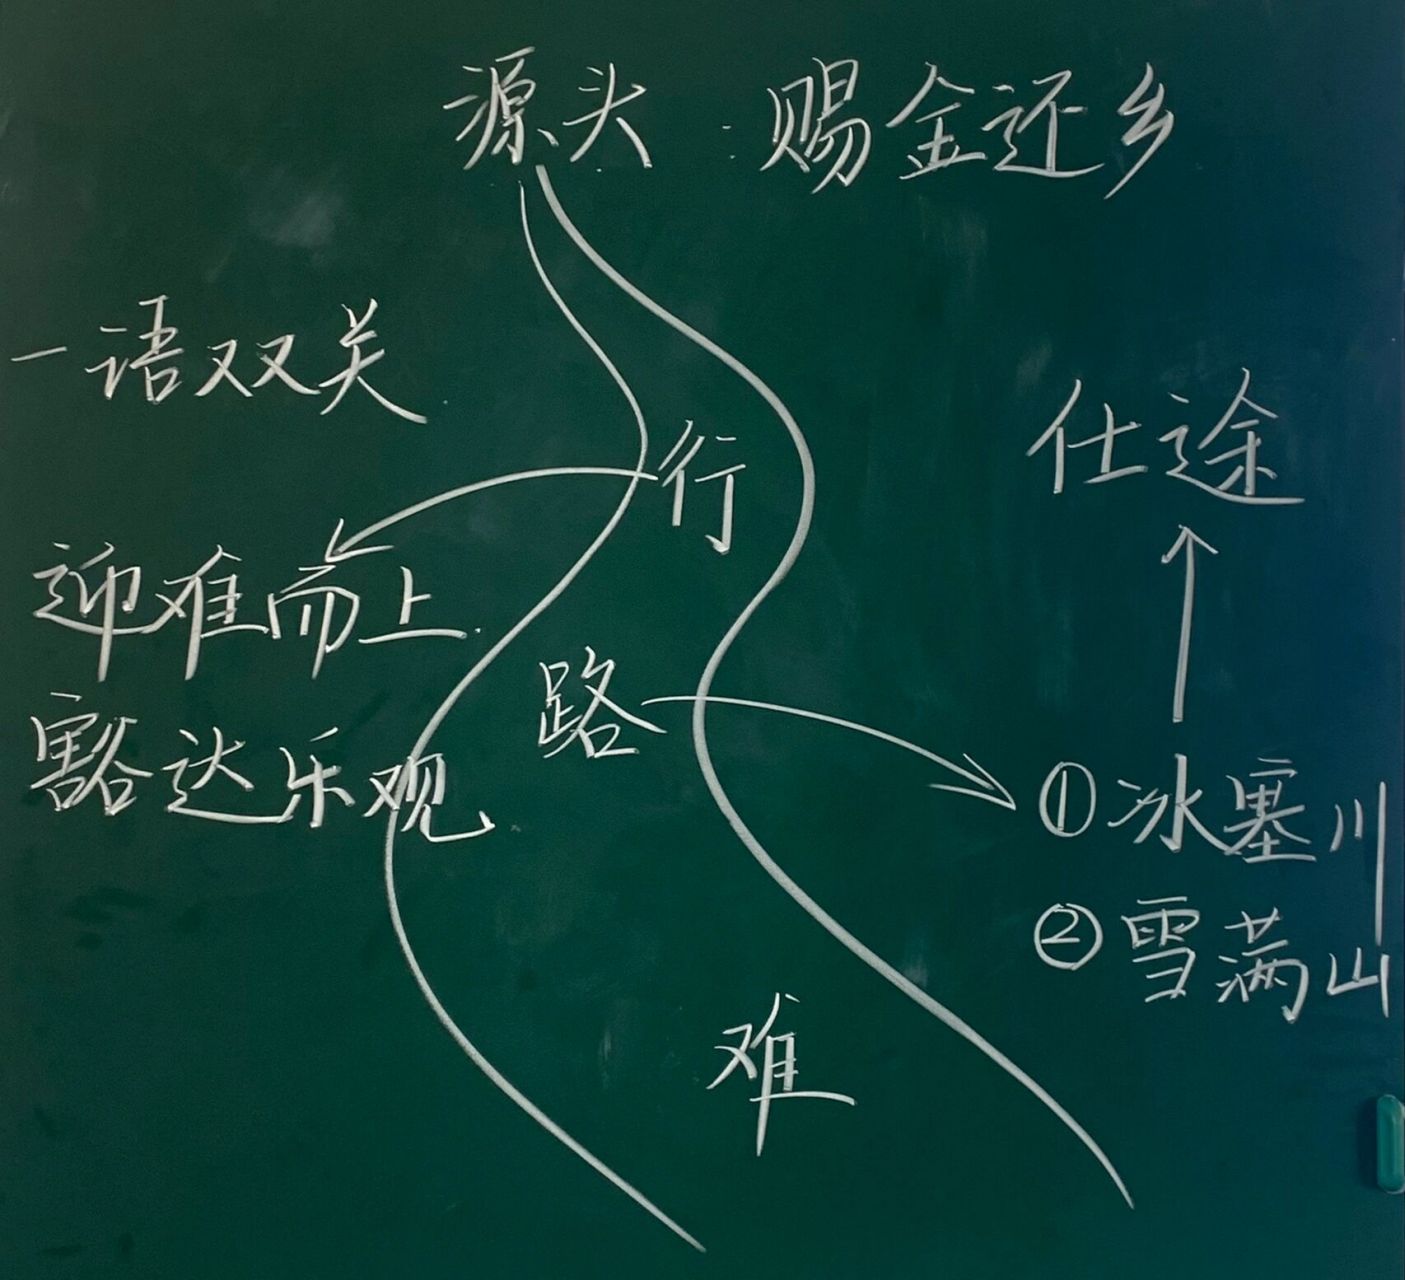 初中语文简笔画板书图片